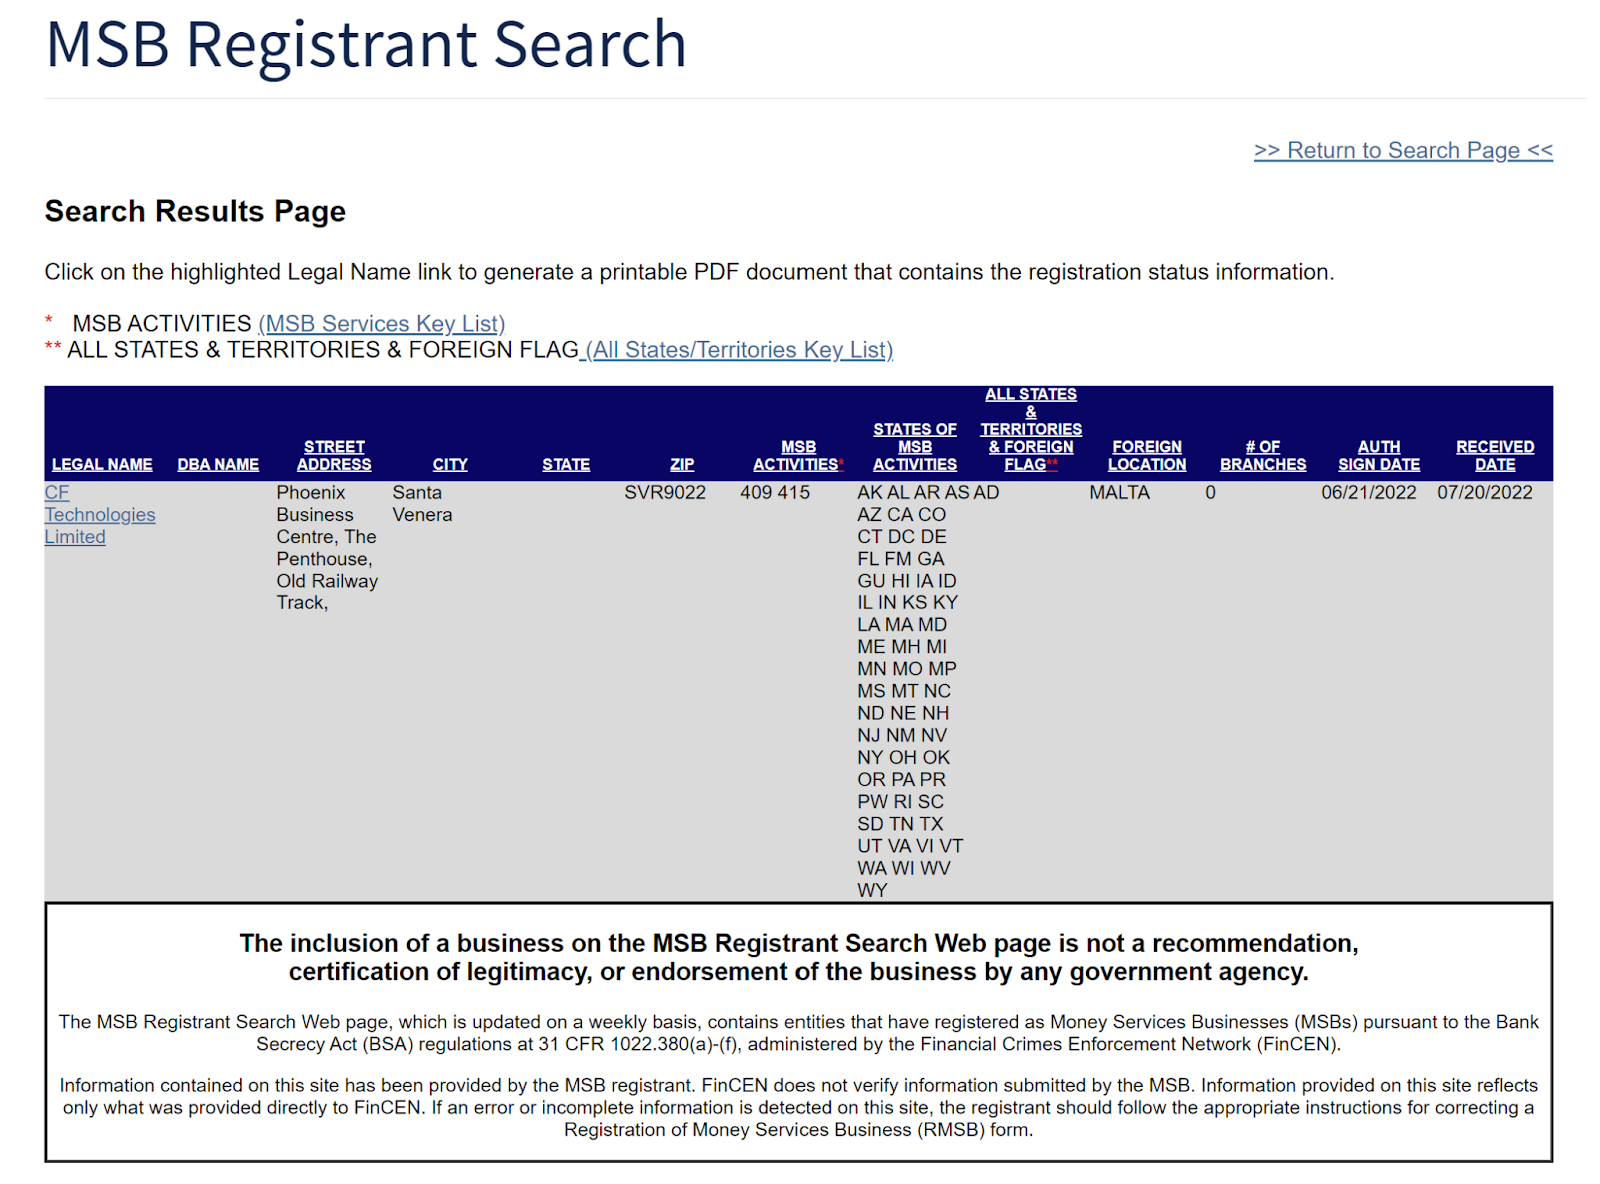 Captura de pantalla del listado de Xcoins en el sitio web FinCen MSB Registrant Search